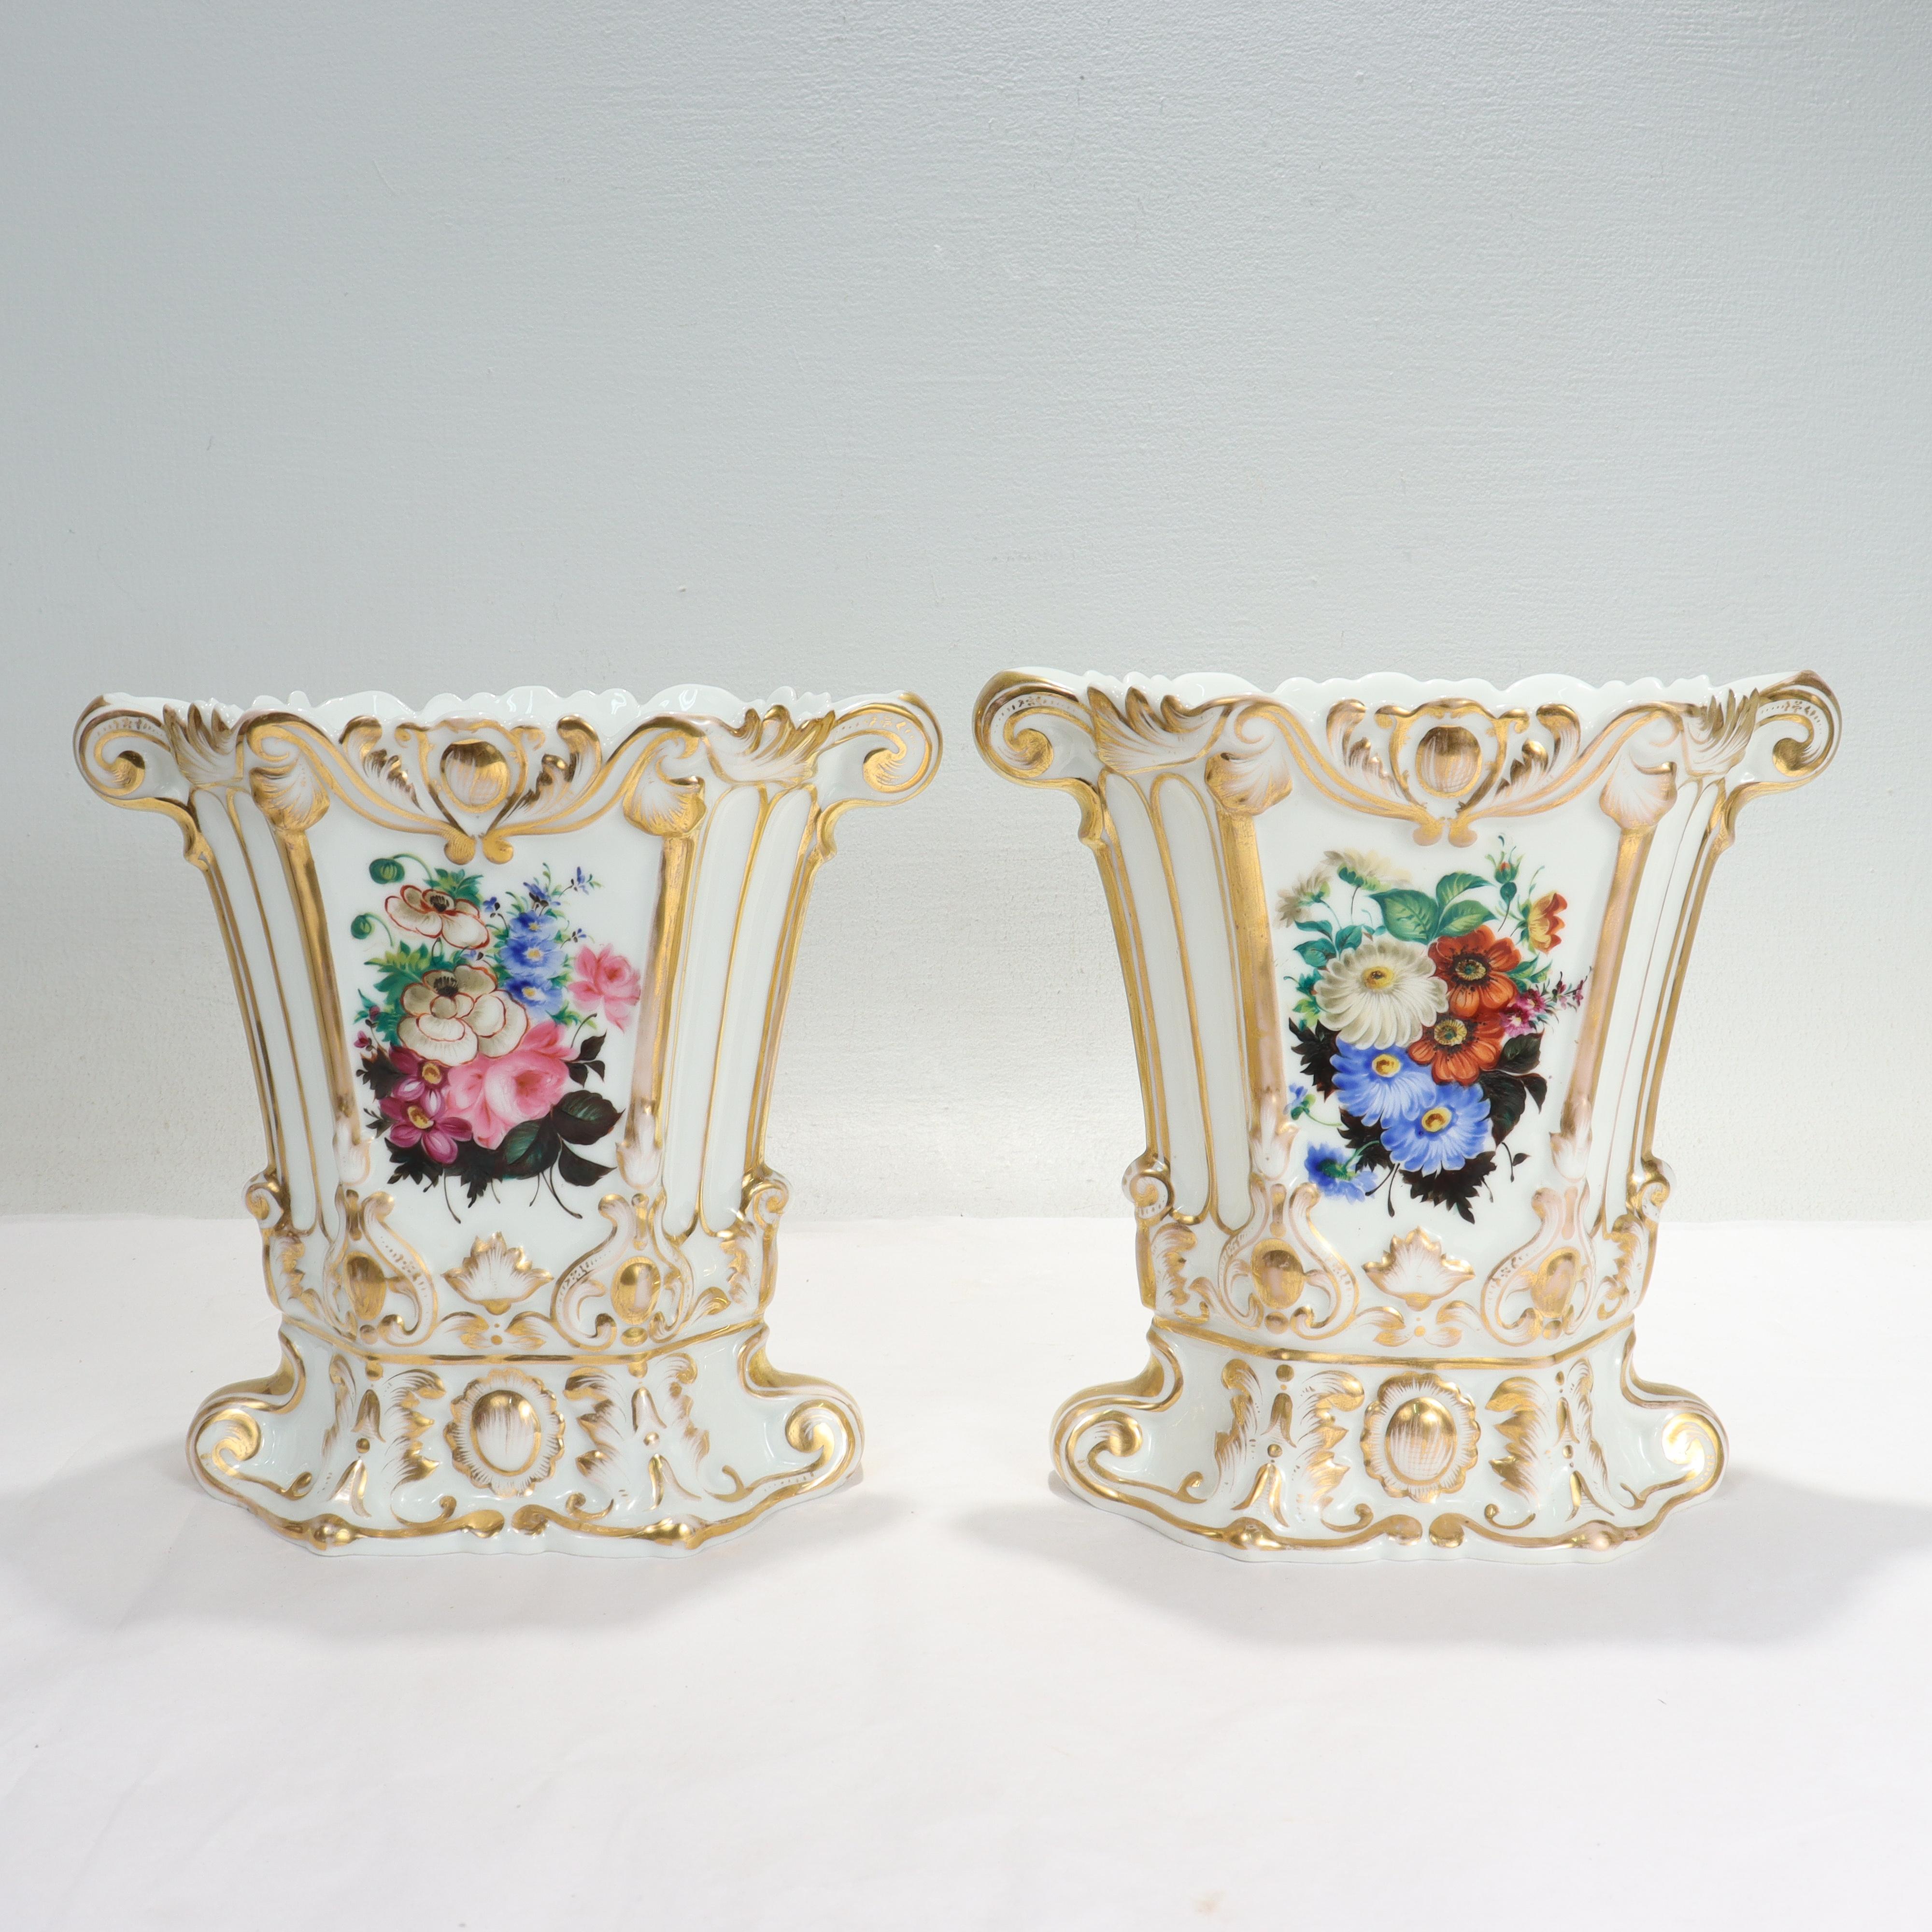 Ein schönes Paar antiker französischer Porzellanvasen.

Nach dem Vorbild von Jacob Petit.

Jeweils mit umfangreichem Goldschmuck und gemaltem Blumendekor auf beiden Seiten.

Einfach ein tolles Paar Vasen aus altem Pariser Porzellan!